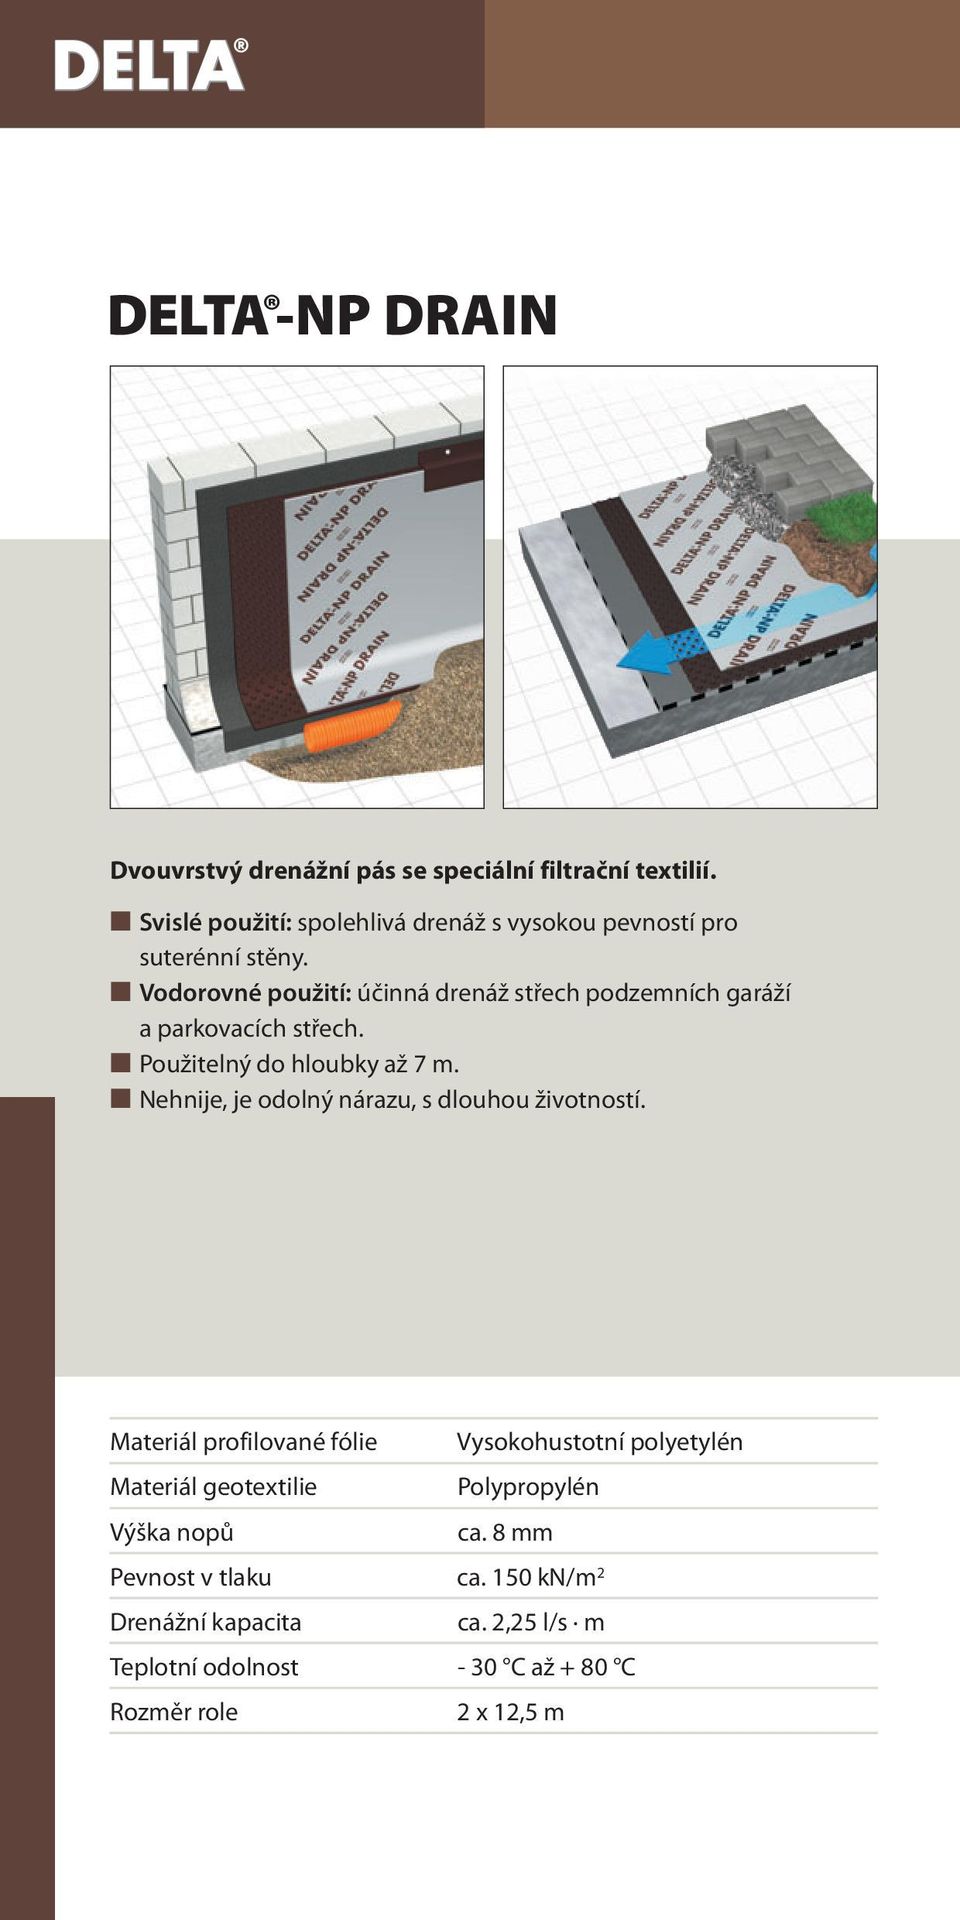 Vodorovné použití: účinná drenáž střech podzemních garáží a parkovacích střech. Použitelný do hloubky až 7 m.